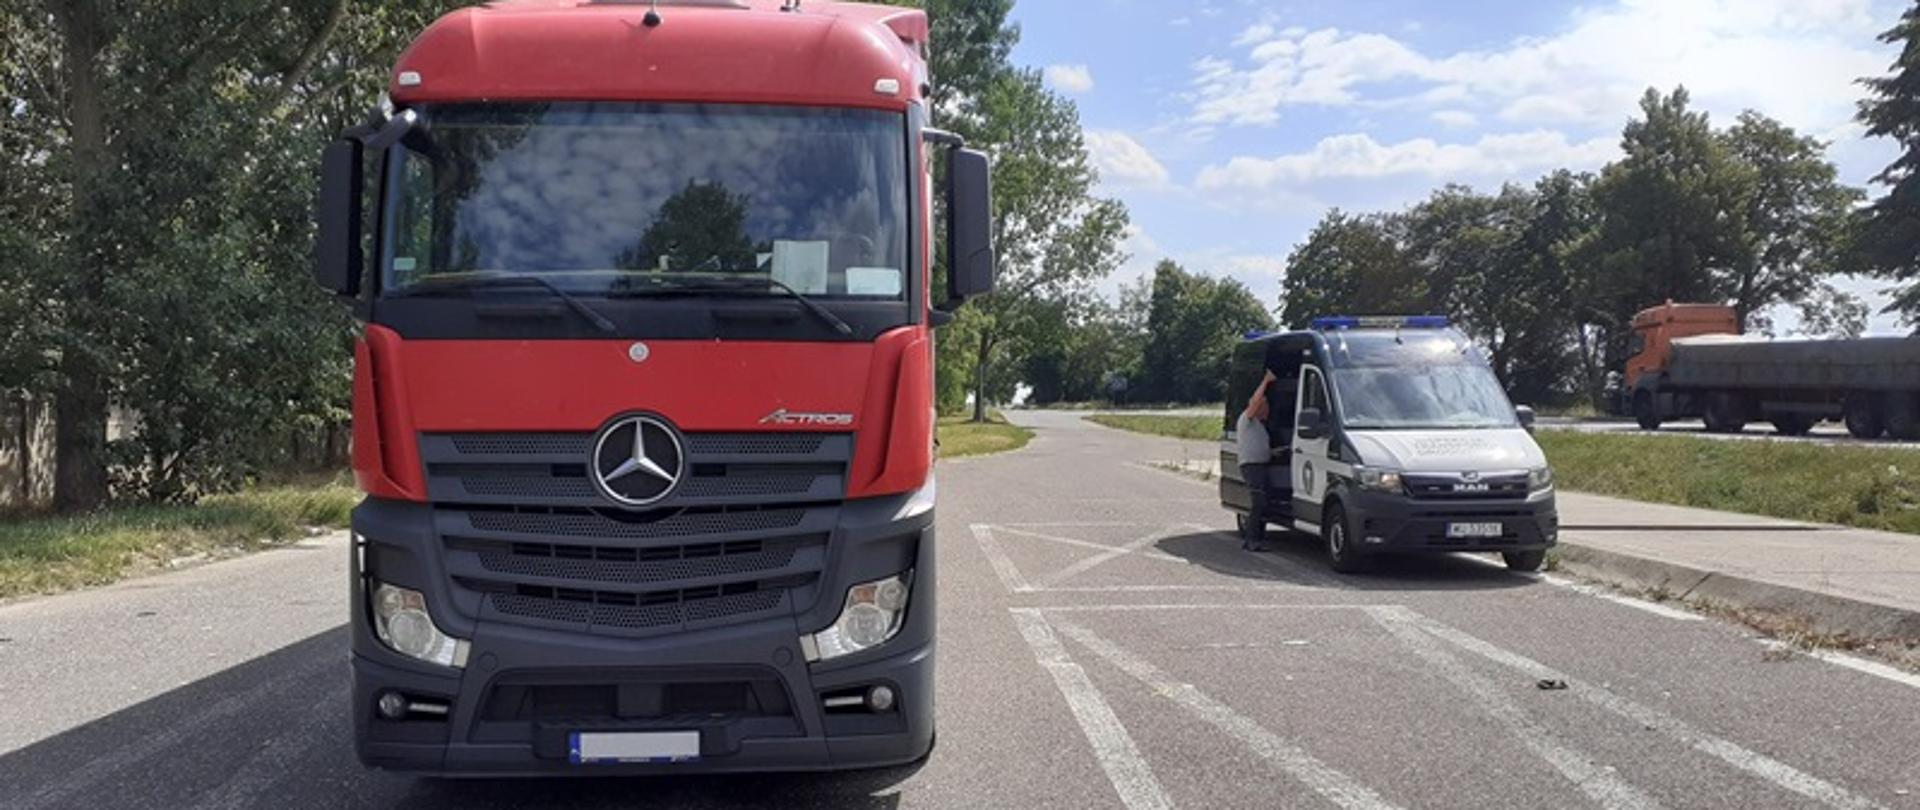 Pojazd członowy polskiego przewoźnika wykonującego krajowy transport drogowy rzeczy z Dąbrowy Górniczej do Szczecina